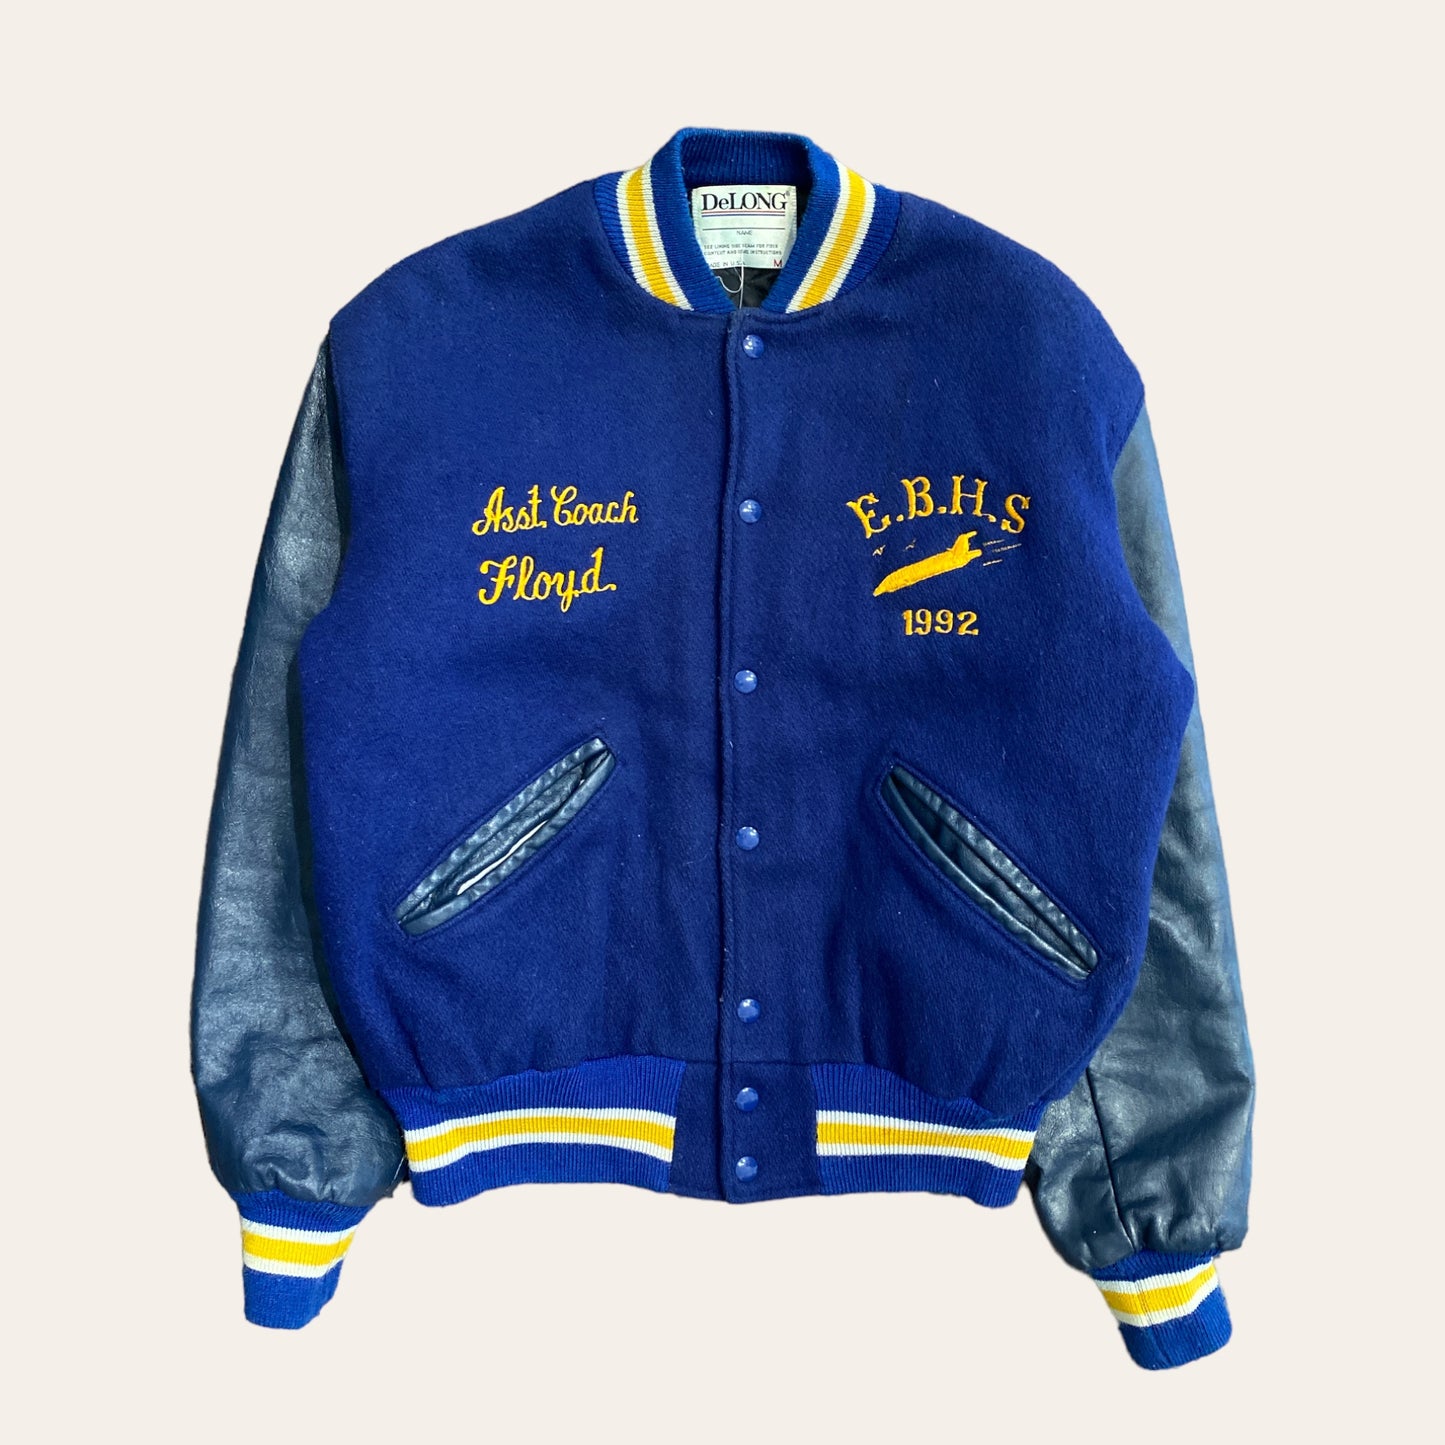 1992 EBHS Varsity Jacket Size M